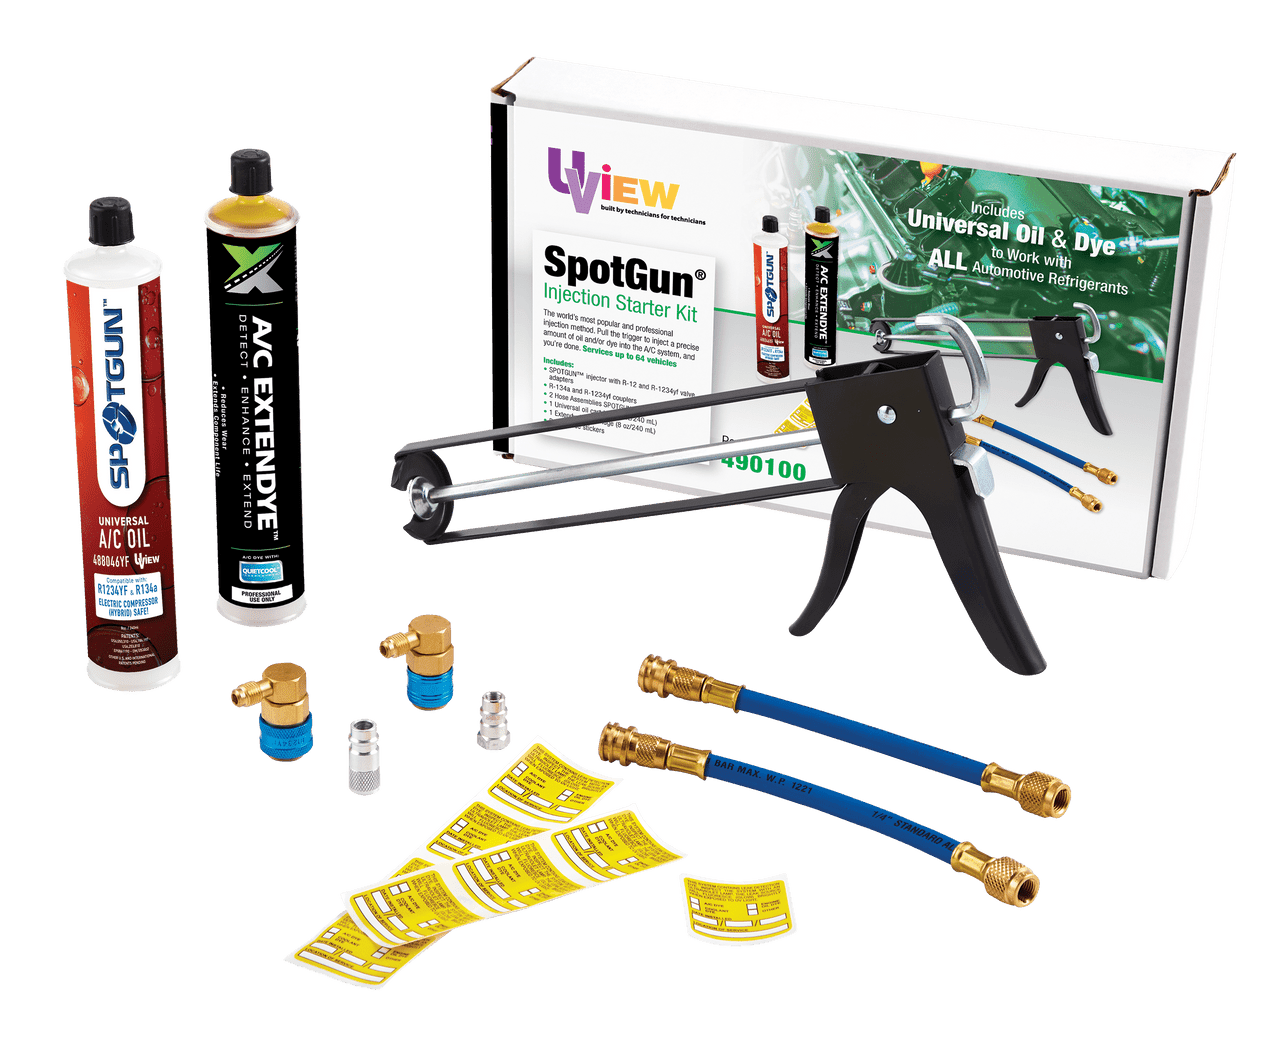 SpotGun® Injection Starter Kit 490100